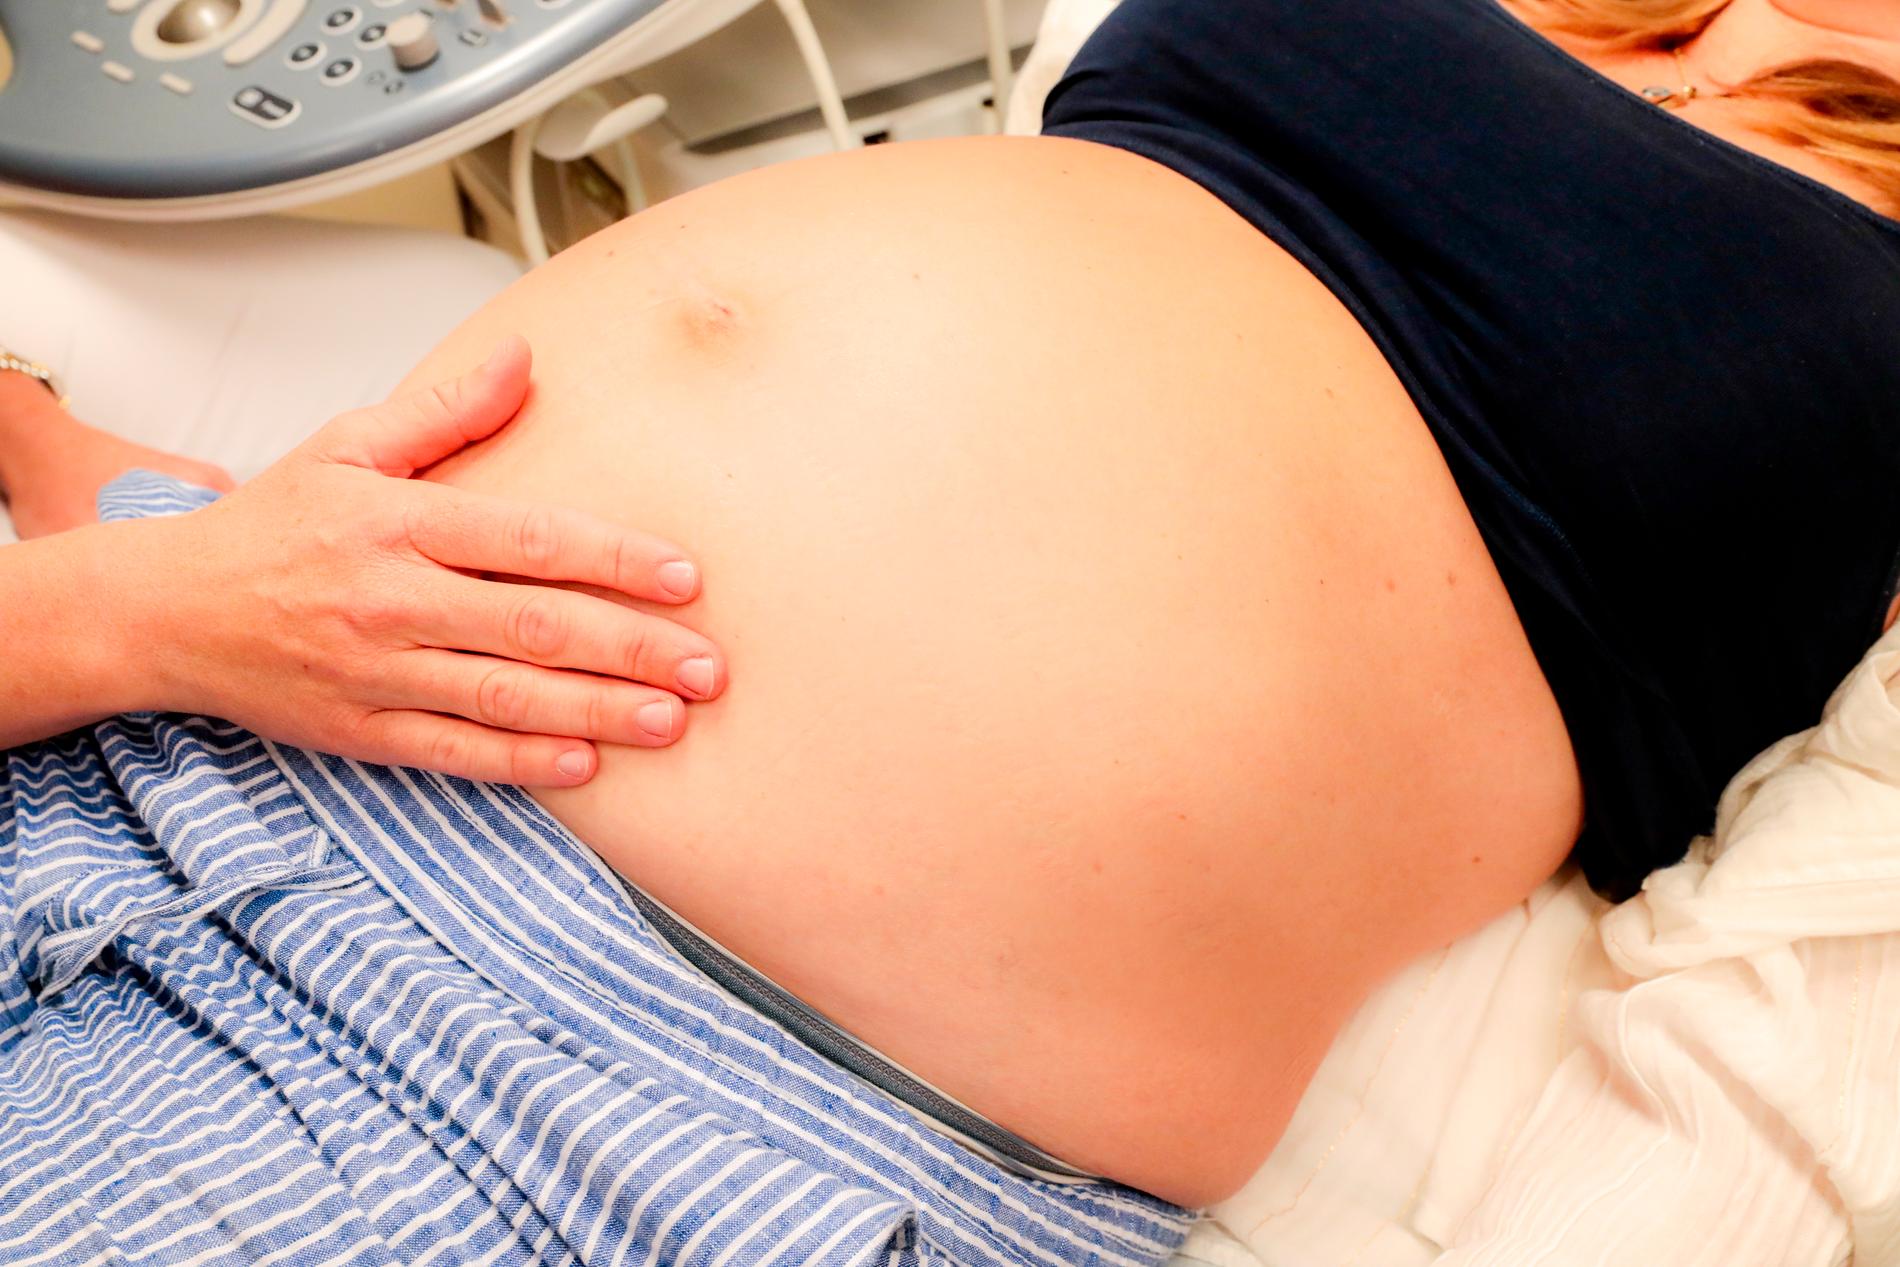 Forskarna har undersökt om vaginal förlossning påverkar sexlivet negativt. 